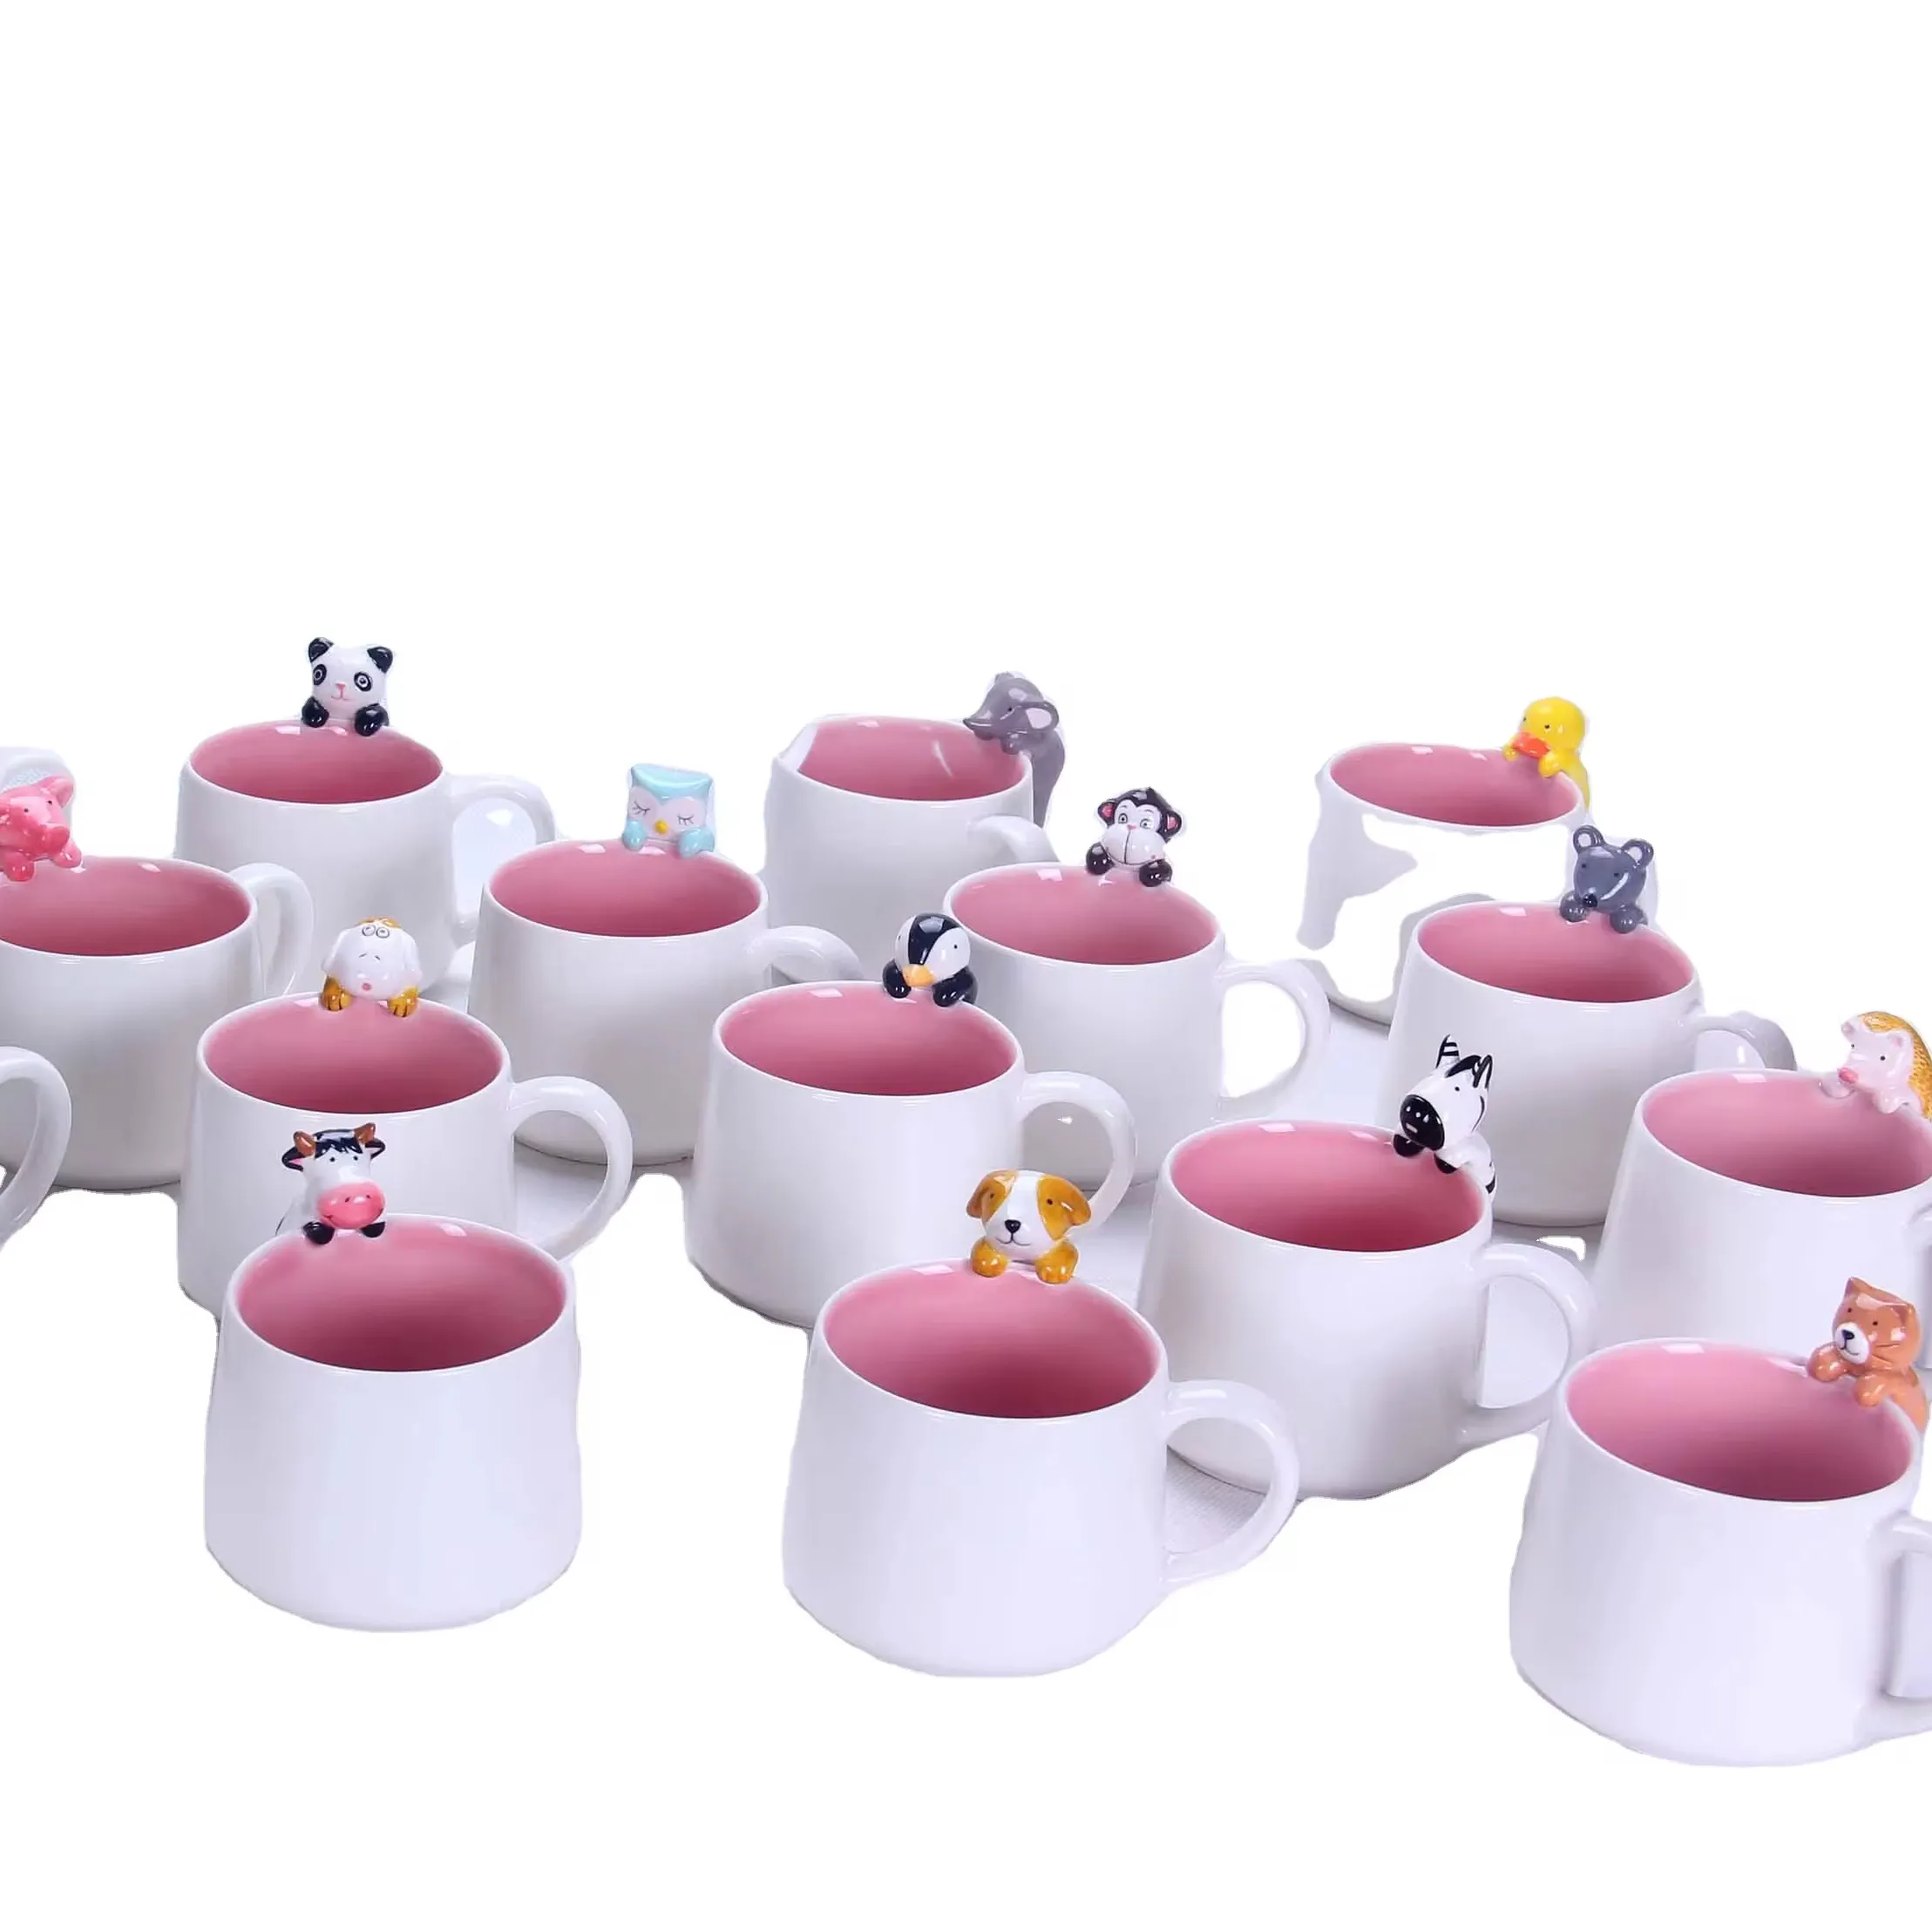 Prix bas chat hibou singe forme tasse à café créative 3D Animal tasse tasse en céramique pour boire du café eau thé bouteille de lait